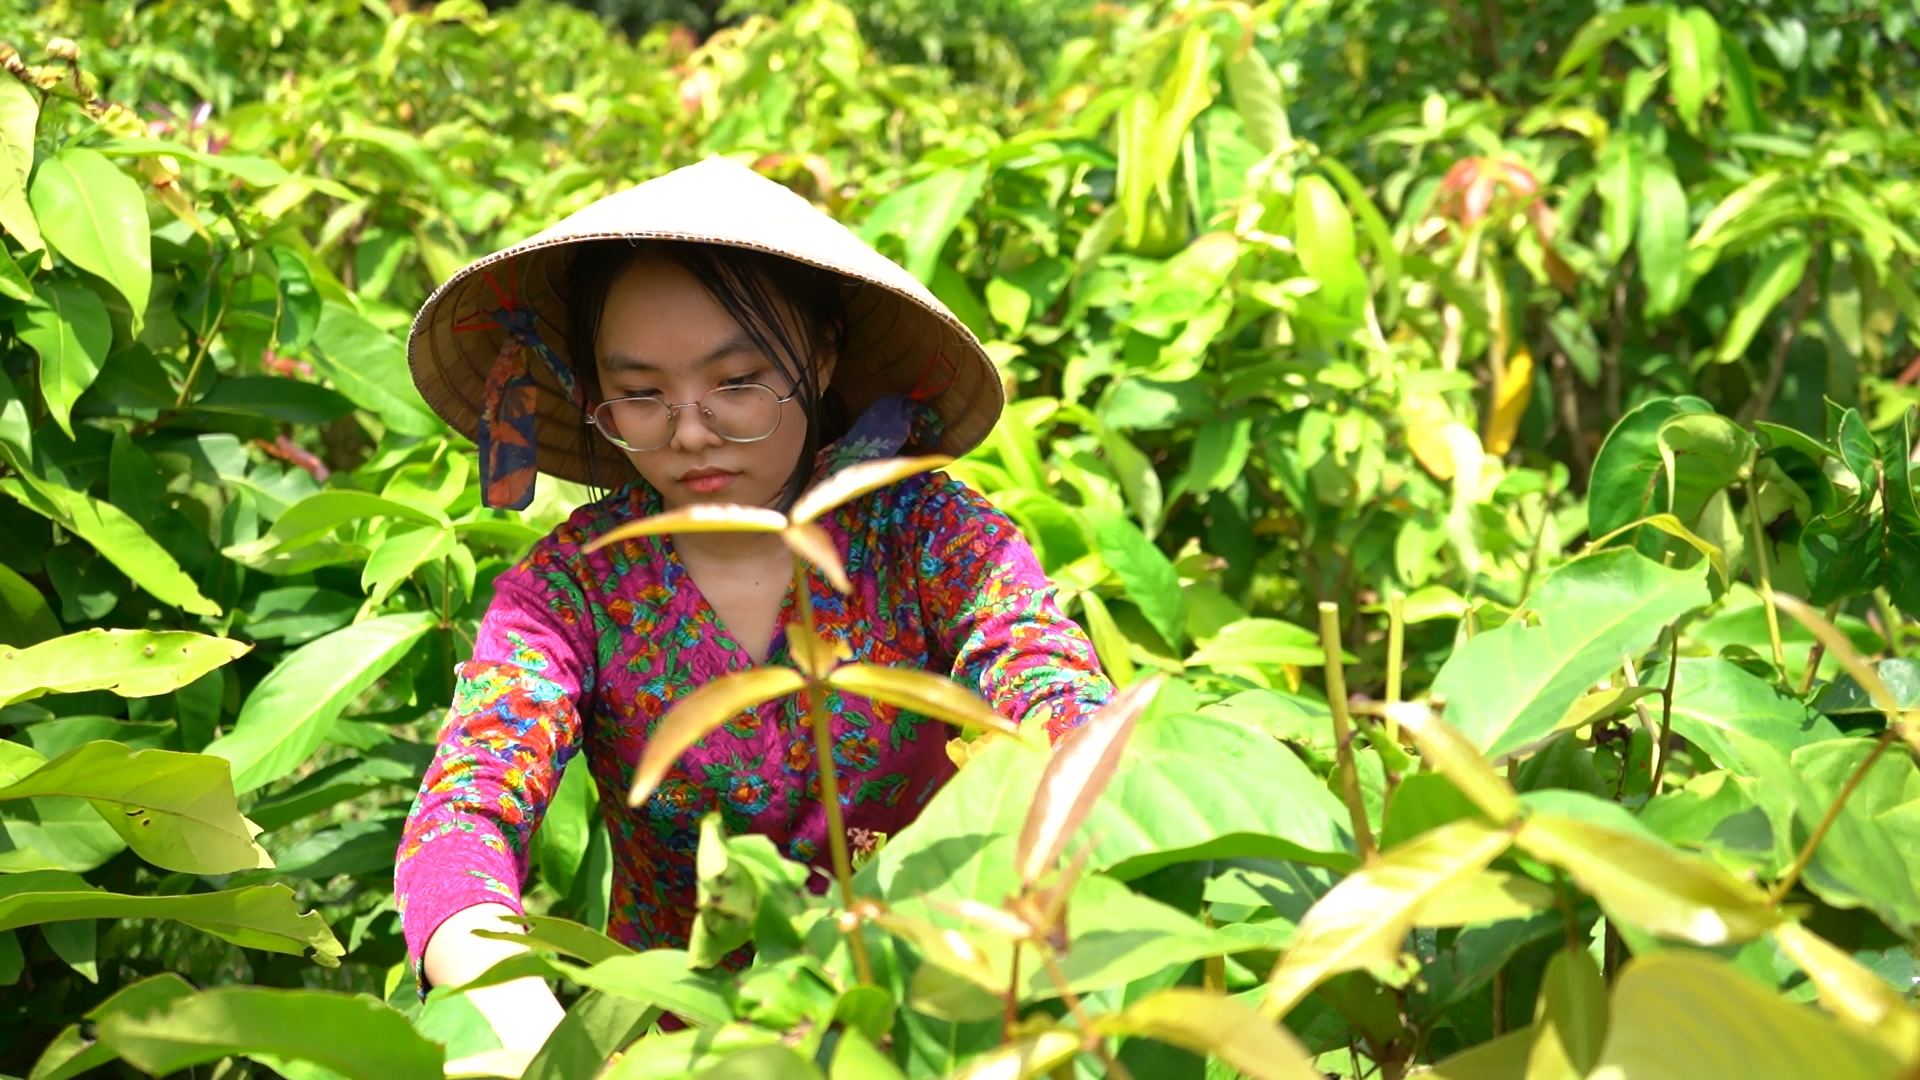 Tây Ninh: Kỳ vọng tạo đột phá trong phát triển du lịch nông thôn